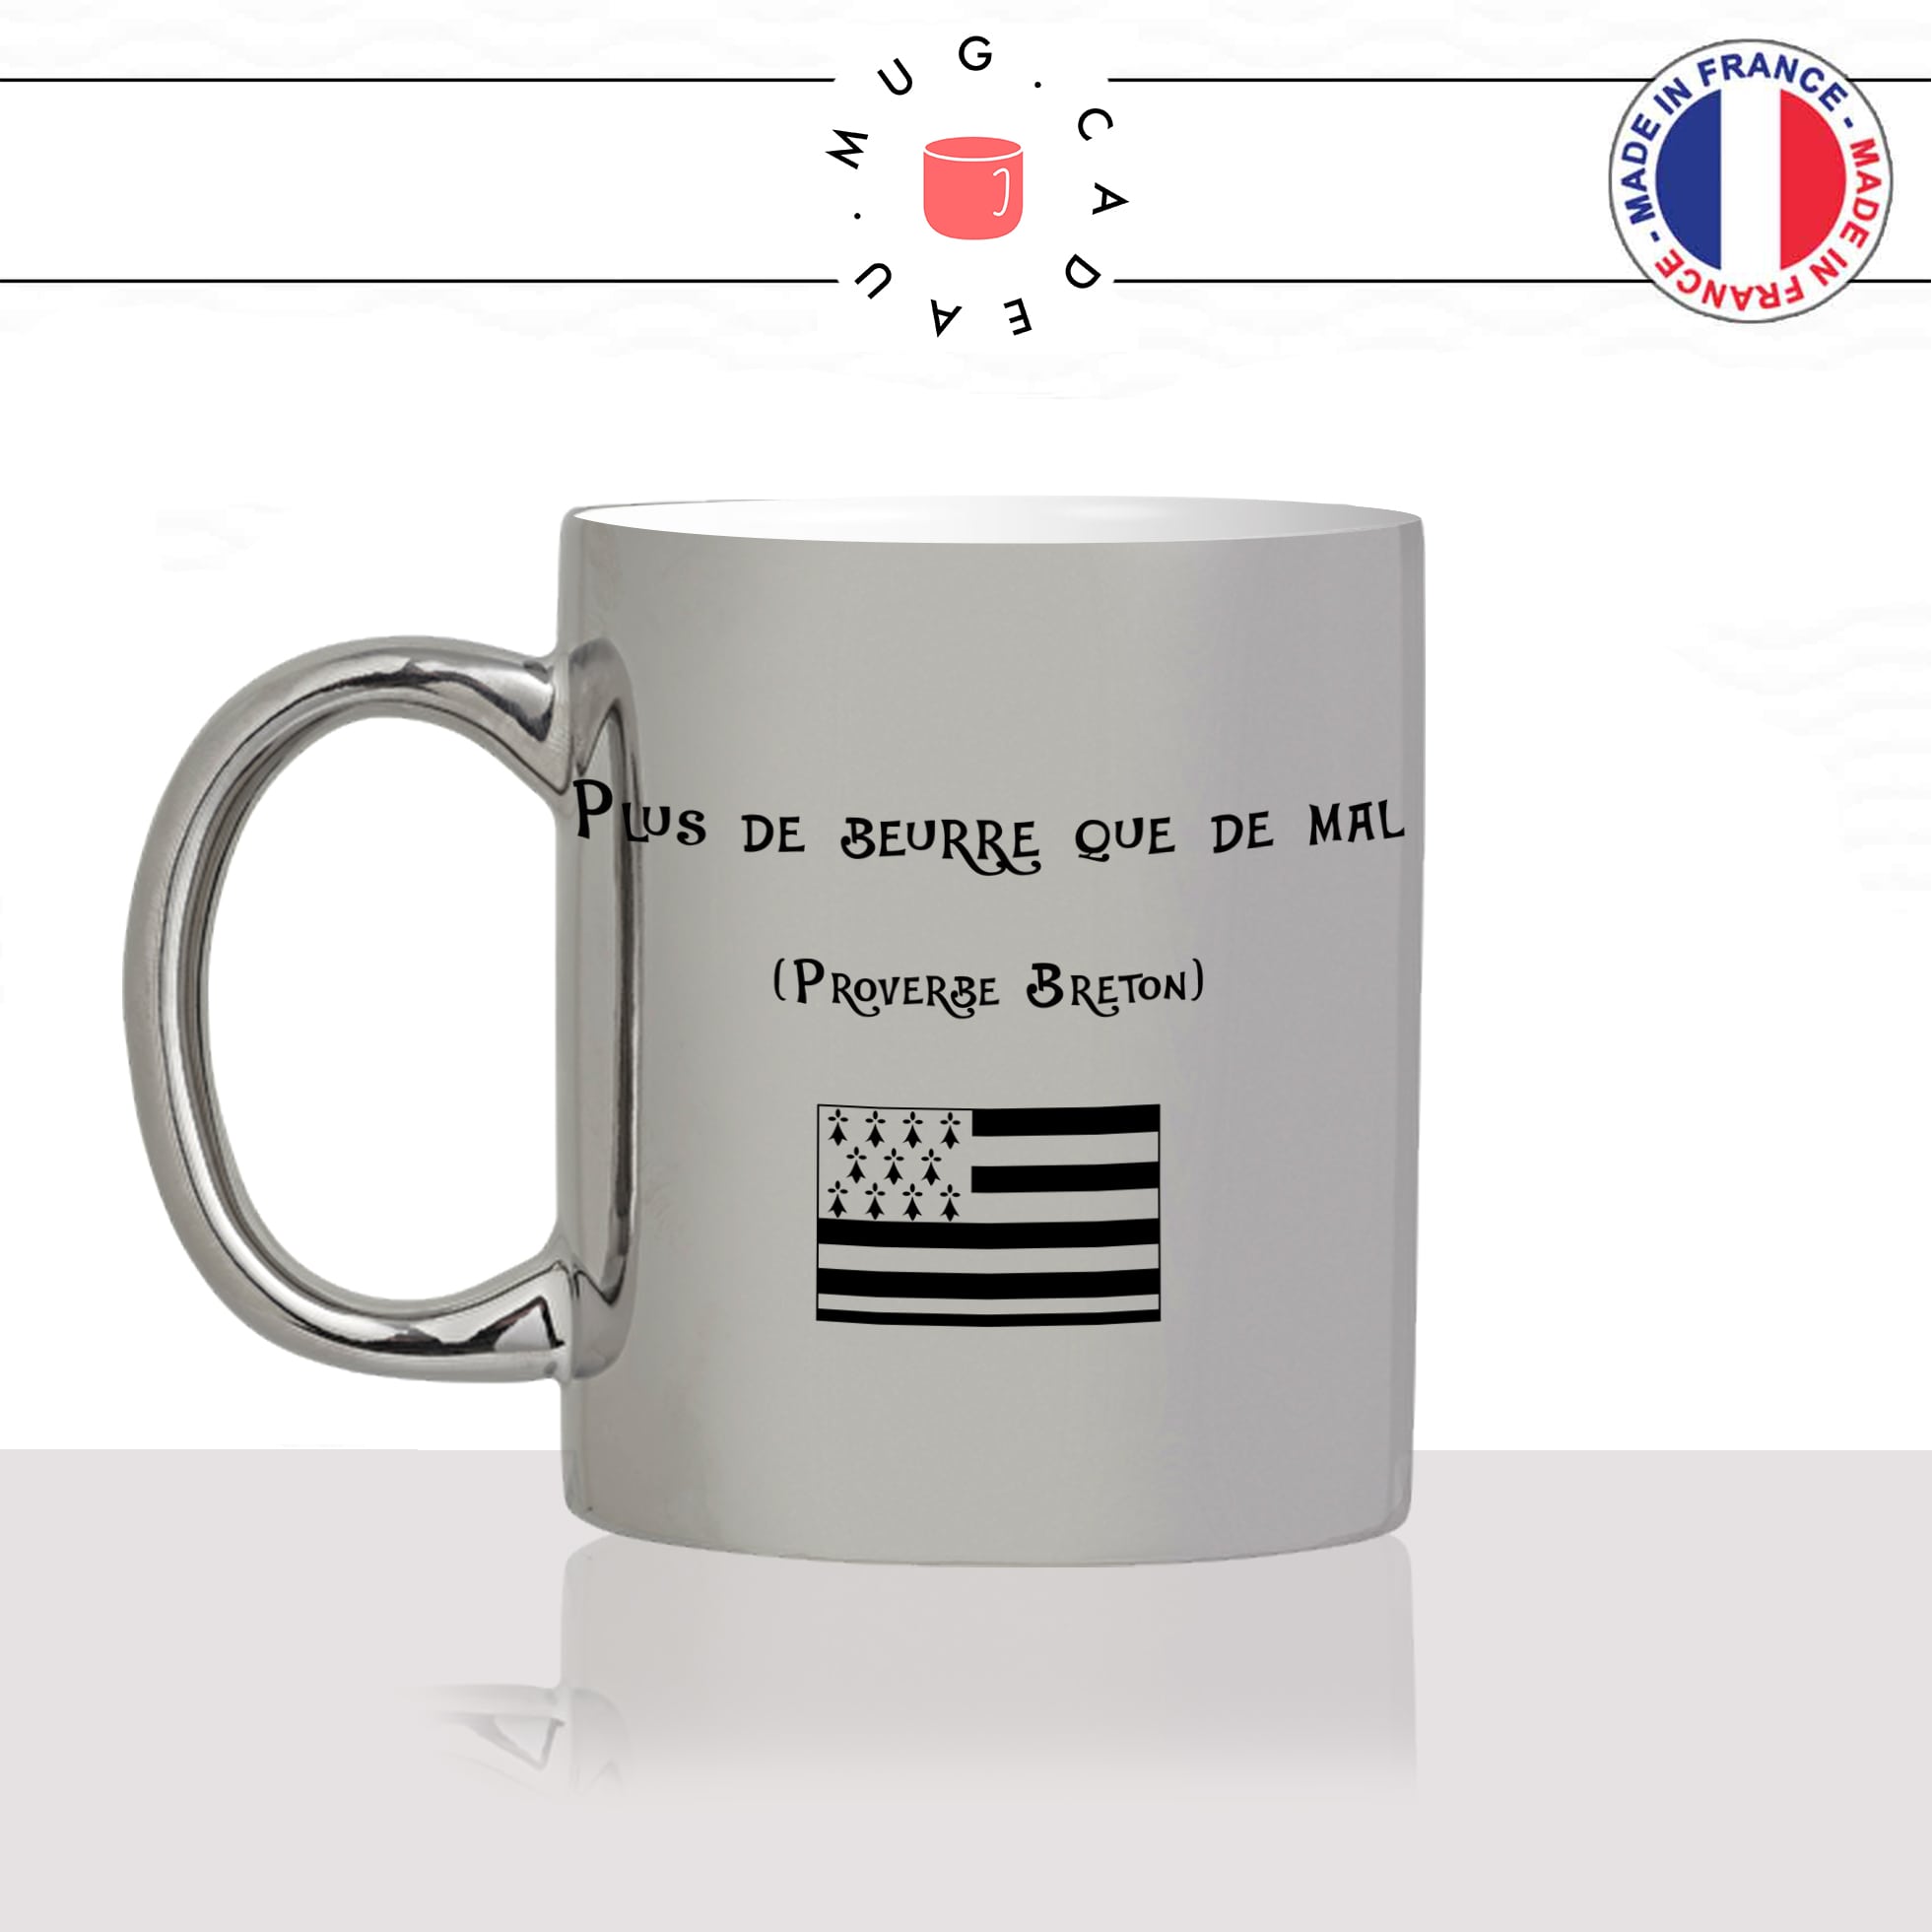 mug-tasse-argent-argenté-silver-breton-bretagne-citation-proverbe-plus-de-beurre-que-de-mal-femme-homme-idée-cadeau-fun-cool-café-thé-original-min